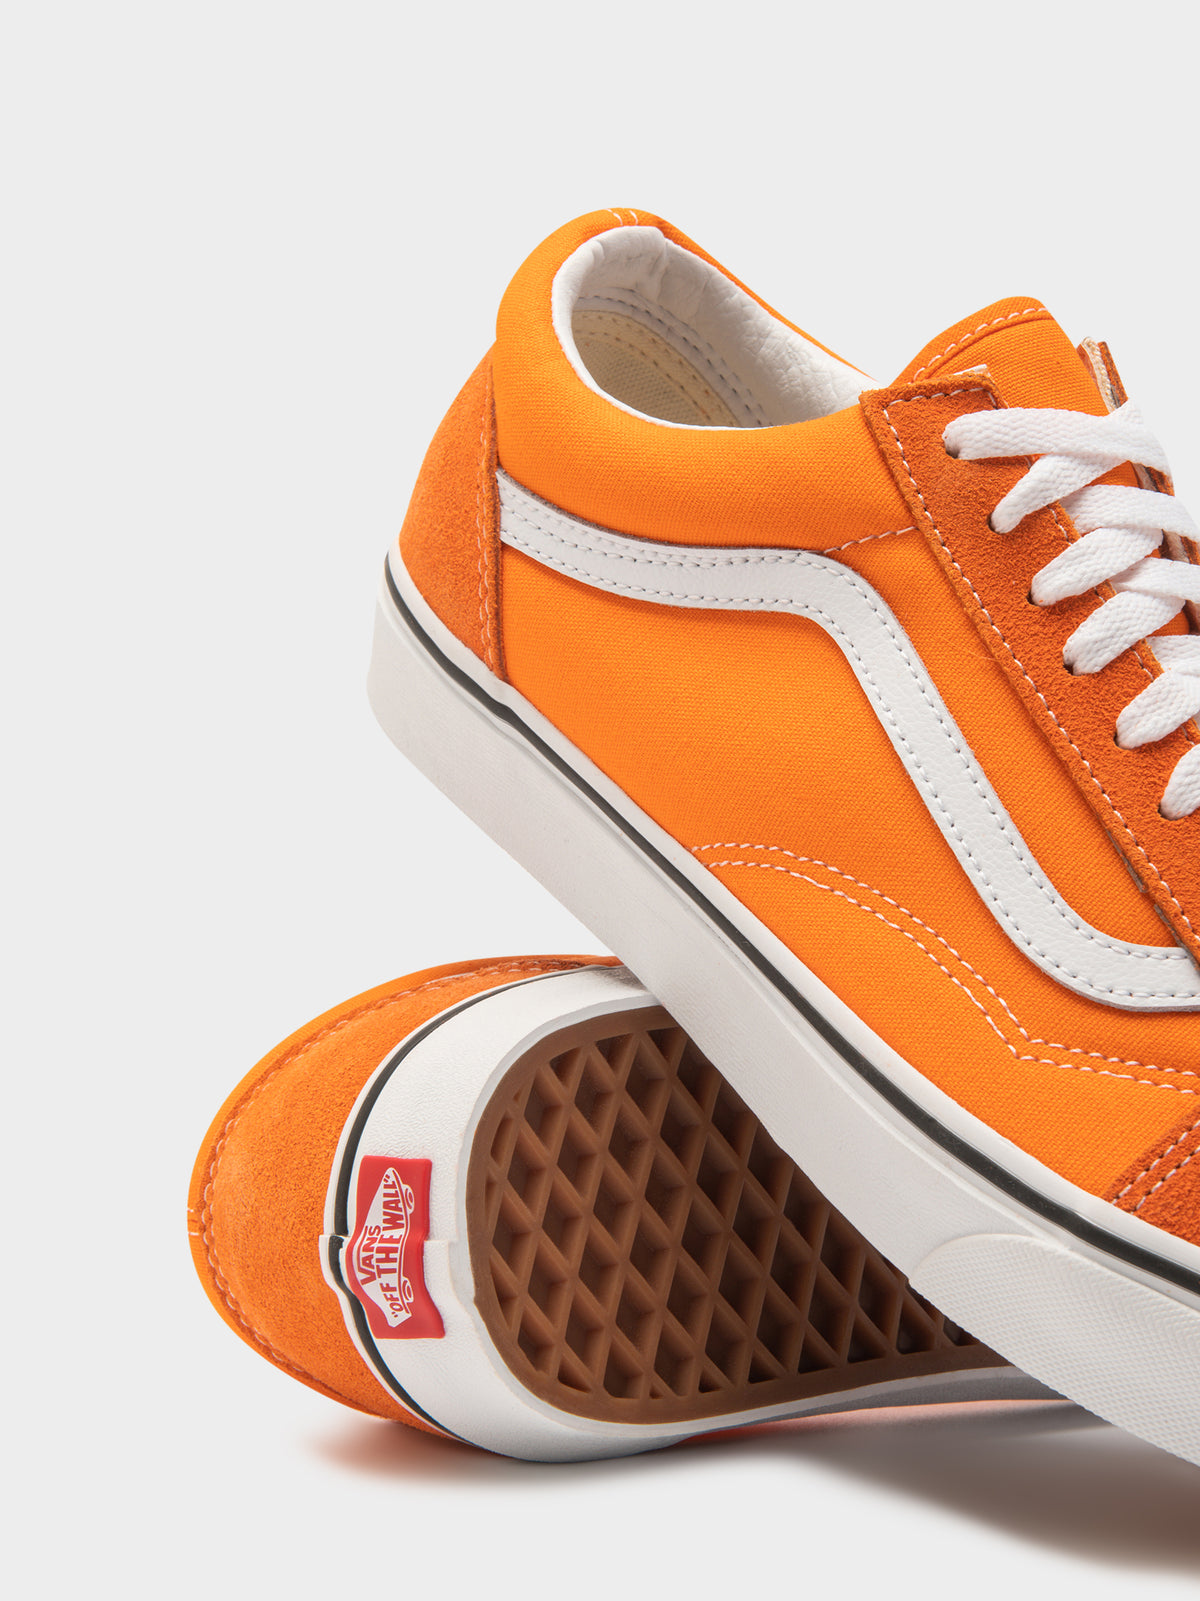 Unisex Vans Old Skool Sneakers in Orange Tiger